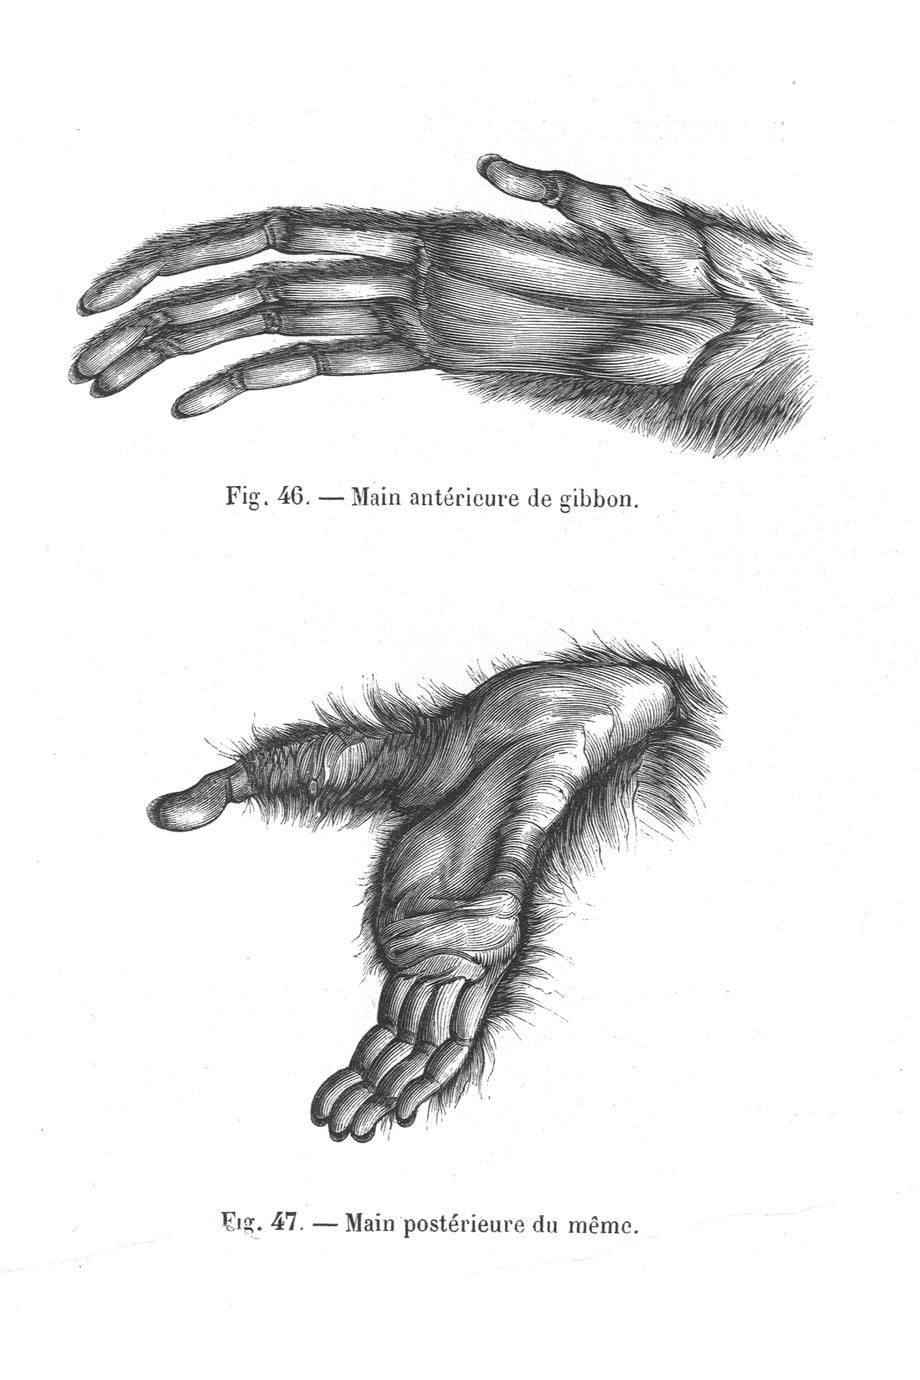 tij radiator precedent Fig. 46--Main antérieure de gibbon (gibbon hand); Fig. 47--Main postérieure  du mème (gibbon foot) - UWDC - UW-Madison Libraries